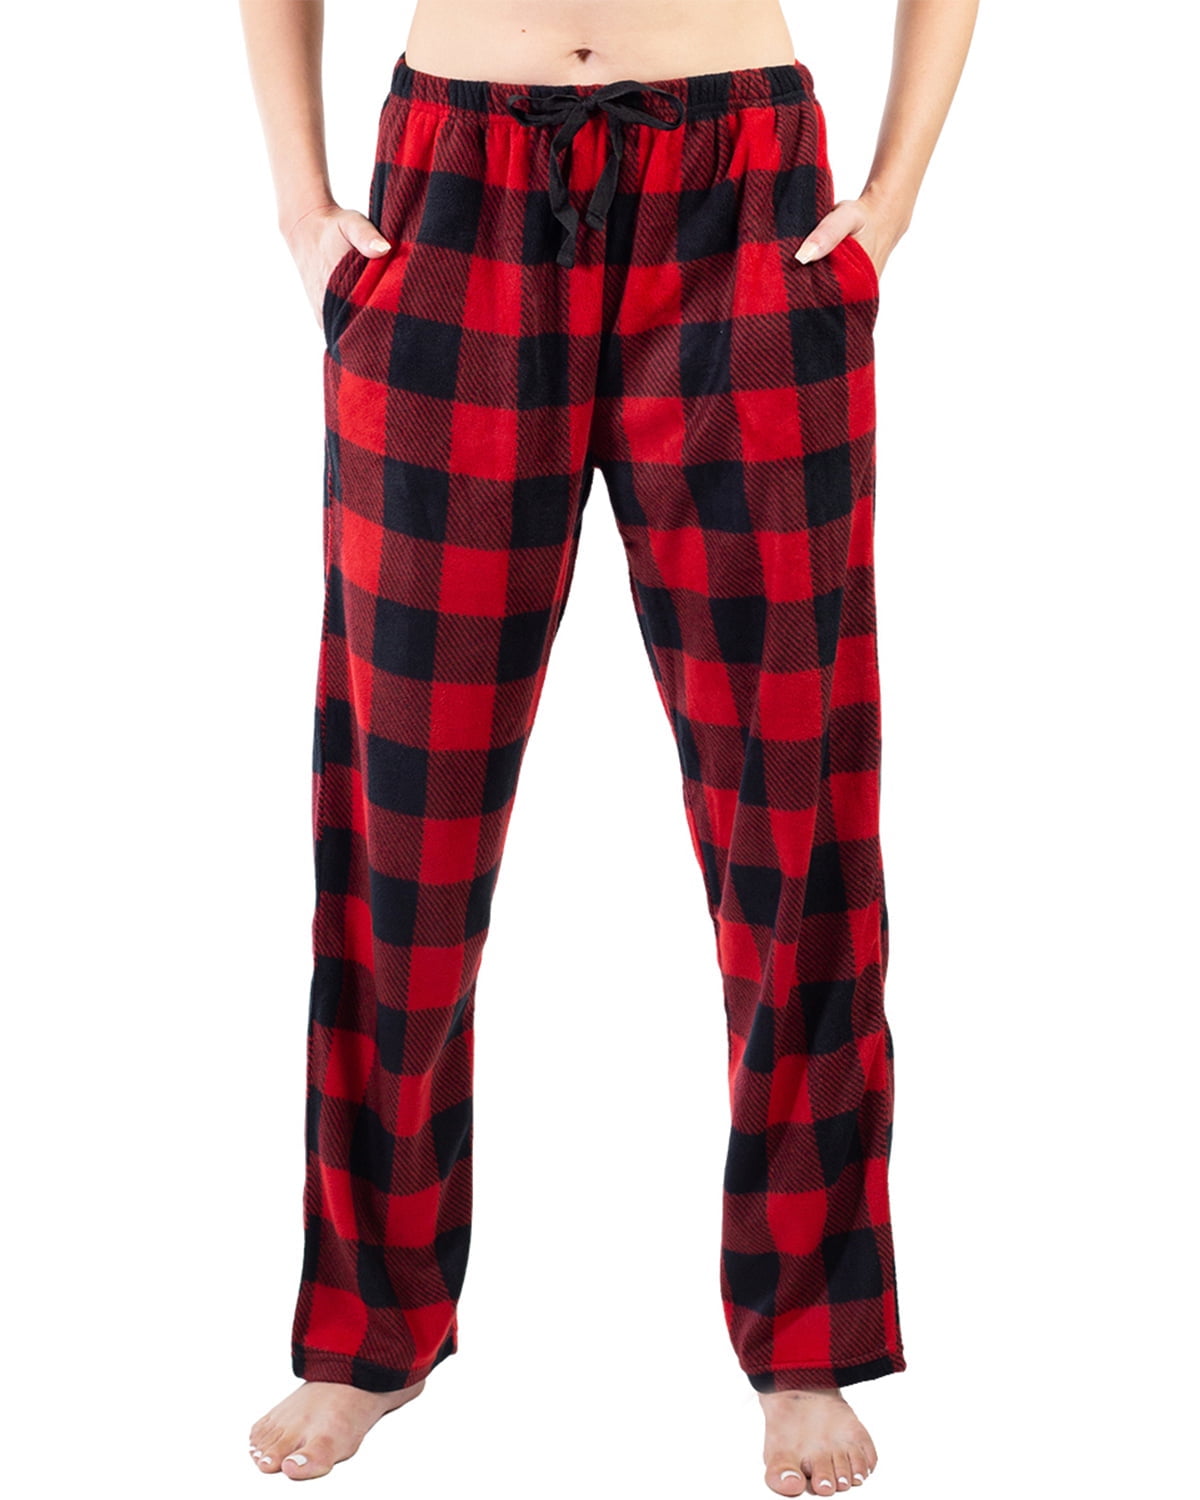 Jo & Bette Women's Fleece Pajama Pants with Pockets, Plaid Sleep Pants 